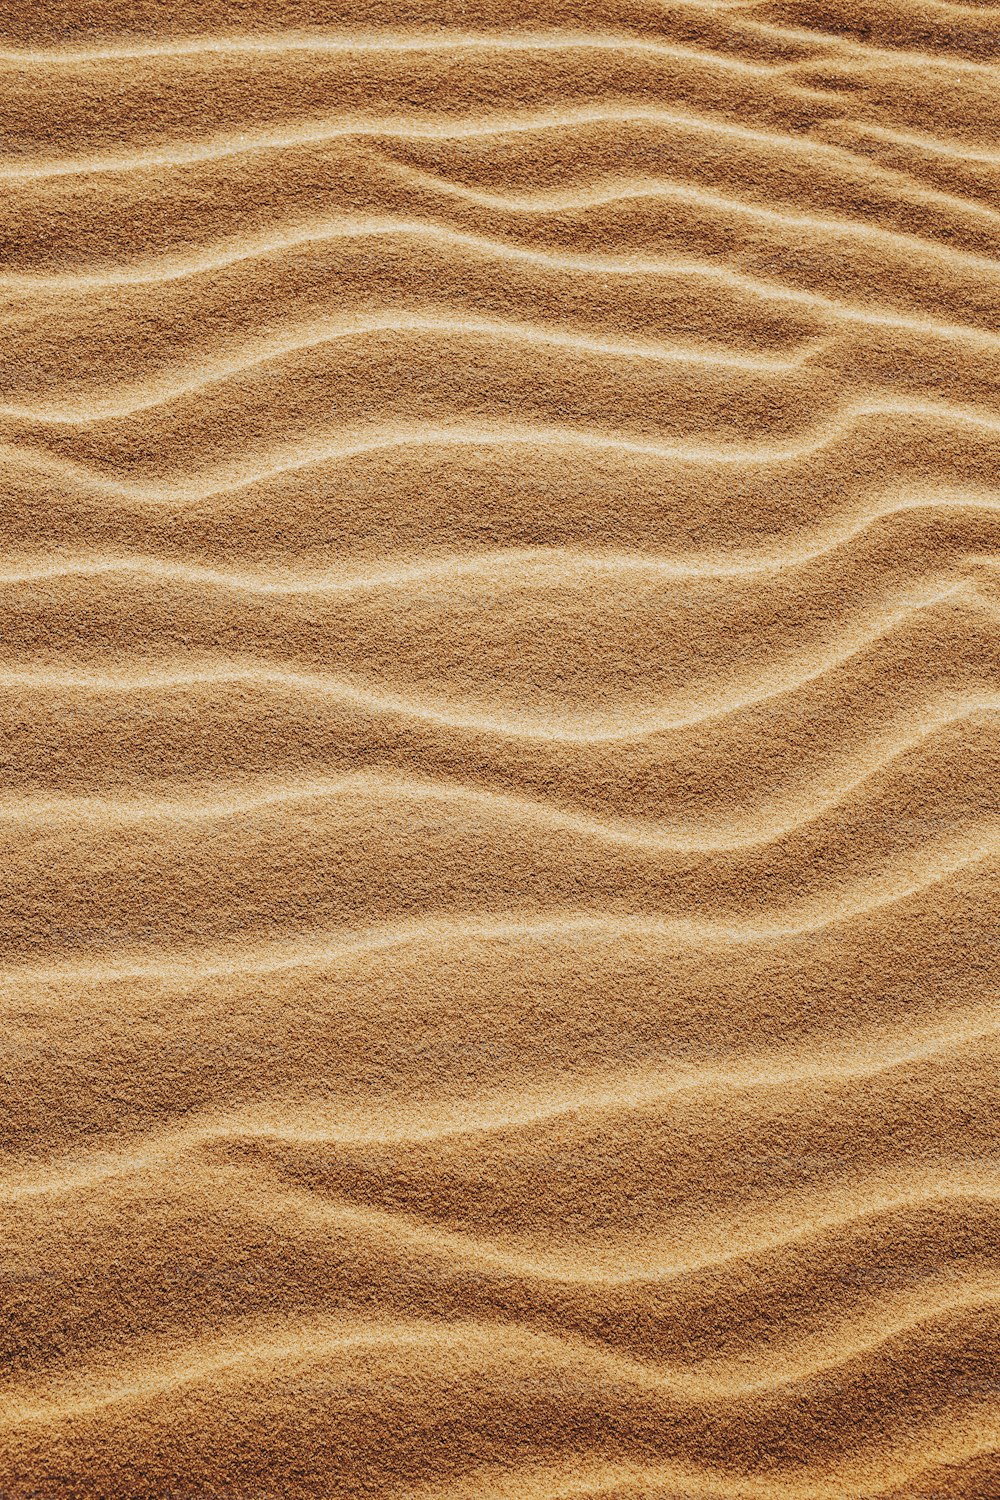 Una duna de arena con líneas onduladas en la arena